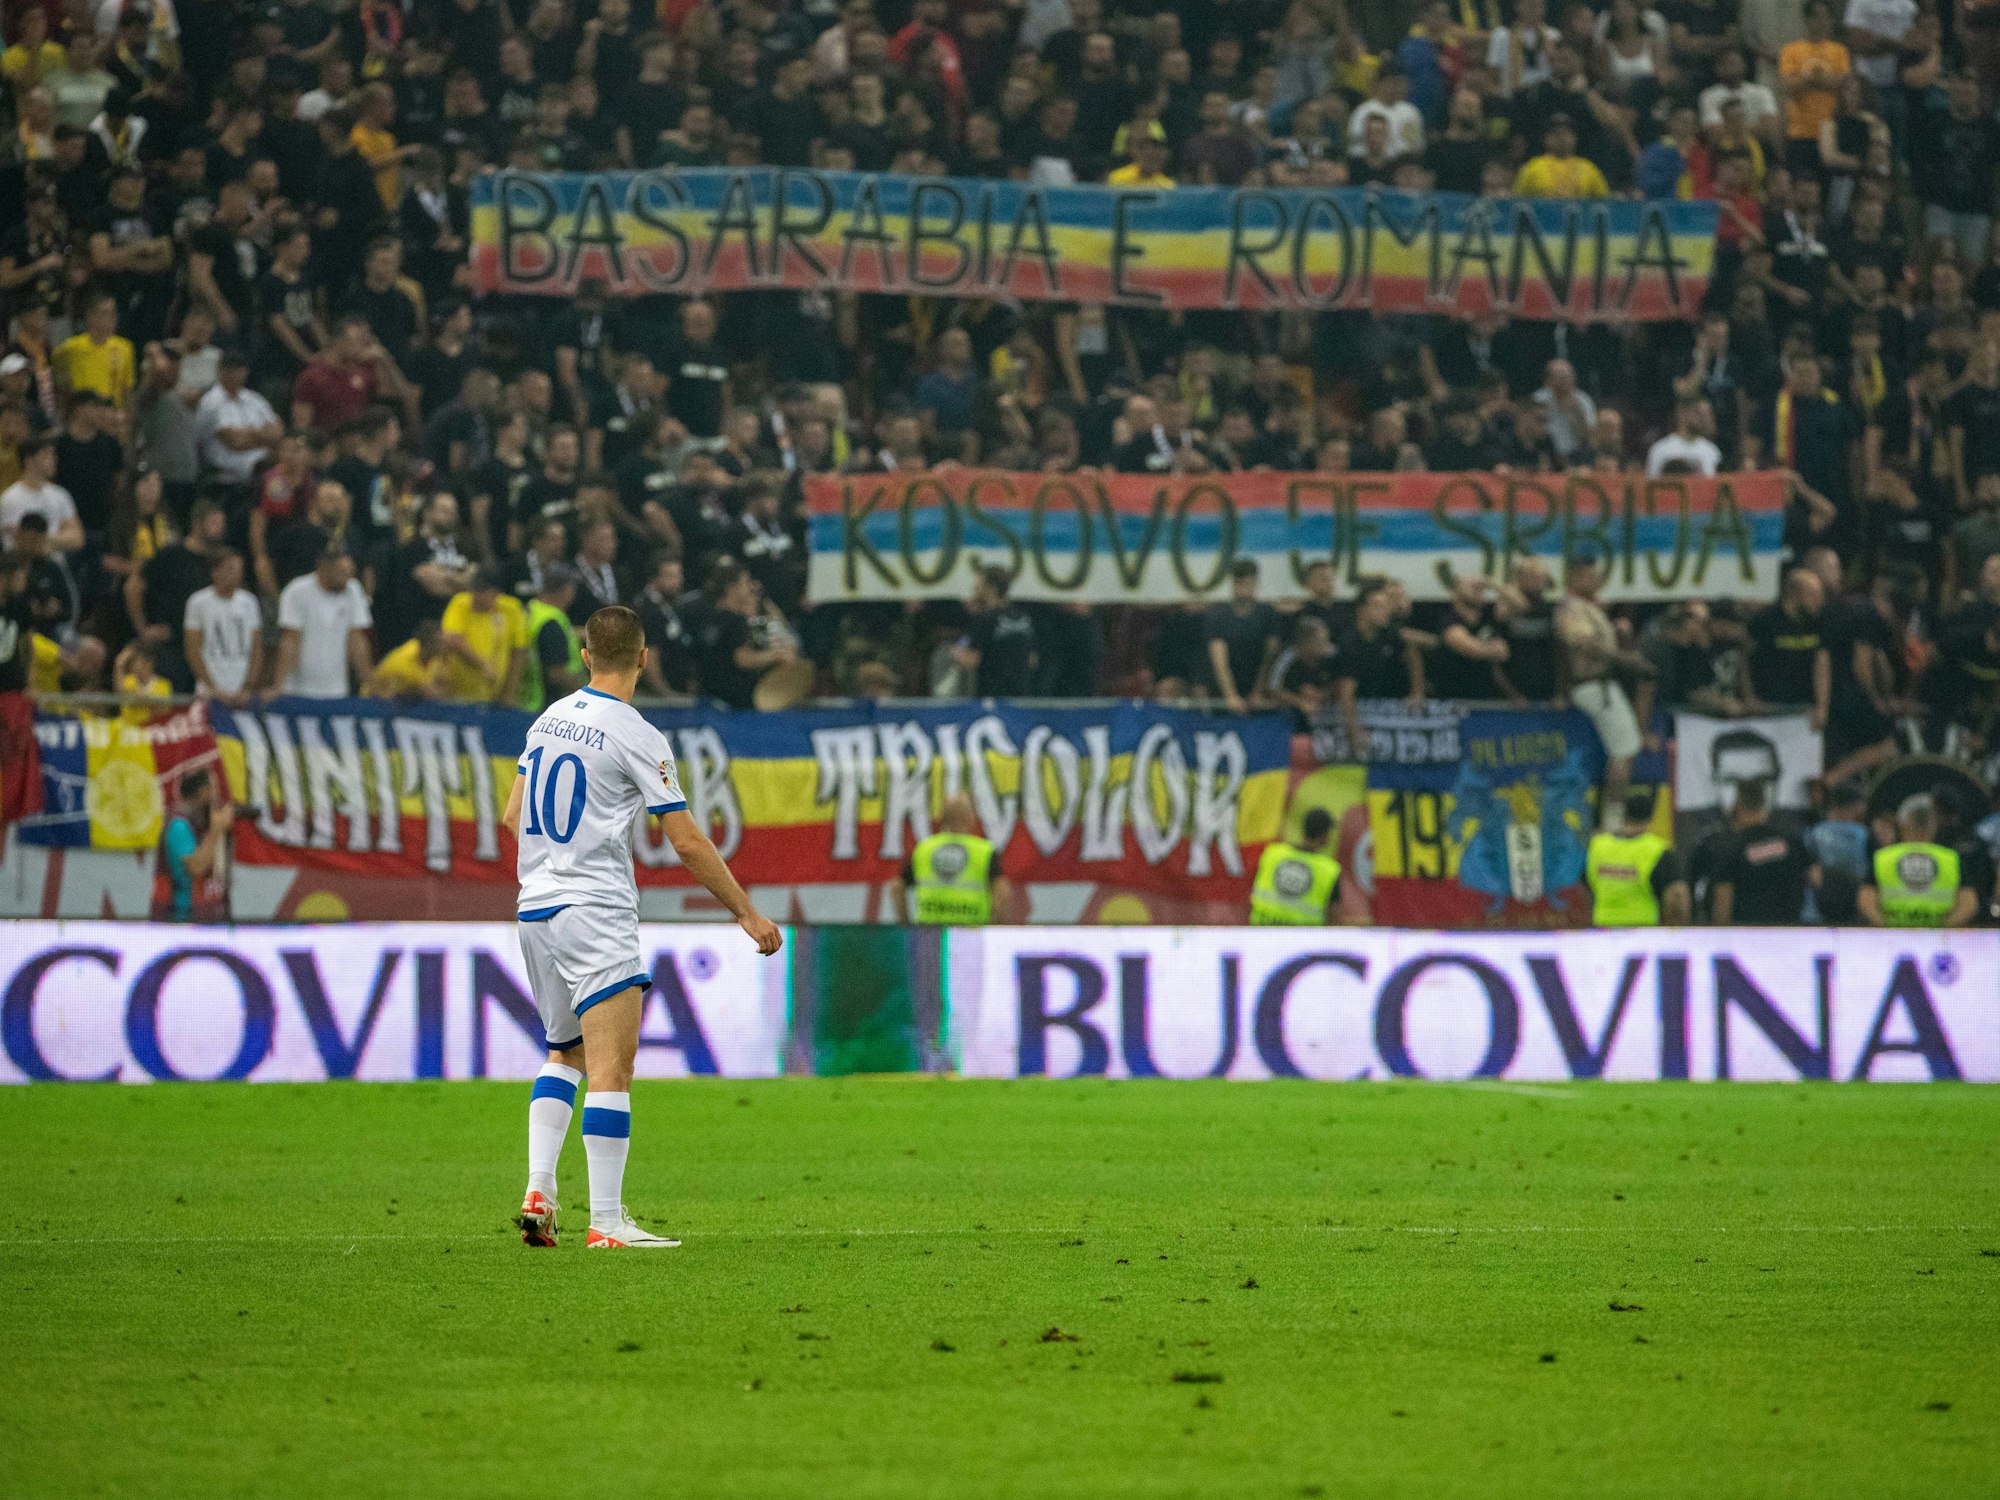 Kosovos Edon Zhegrova schaut auf das Plakat, welches rumänischen Fußballfans ausgehangen haben.